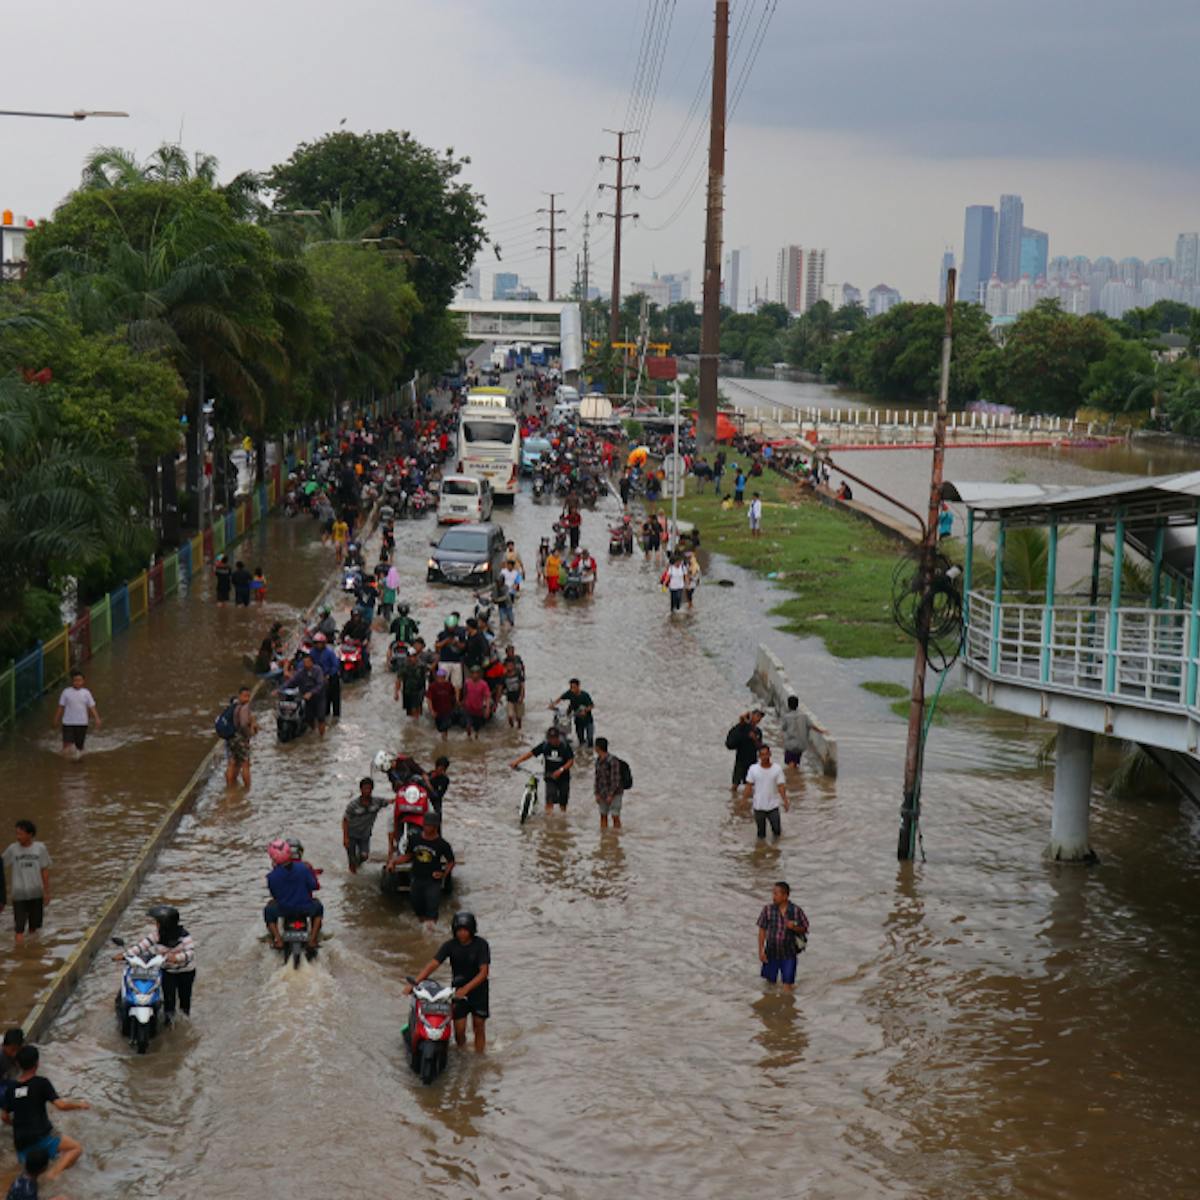 Apa dampak lingkungan akibat bencana banjir